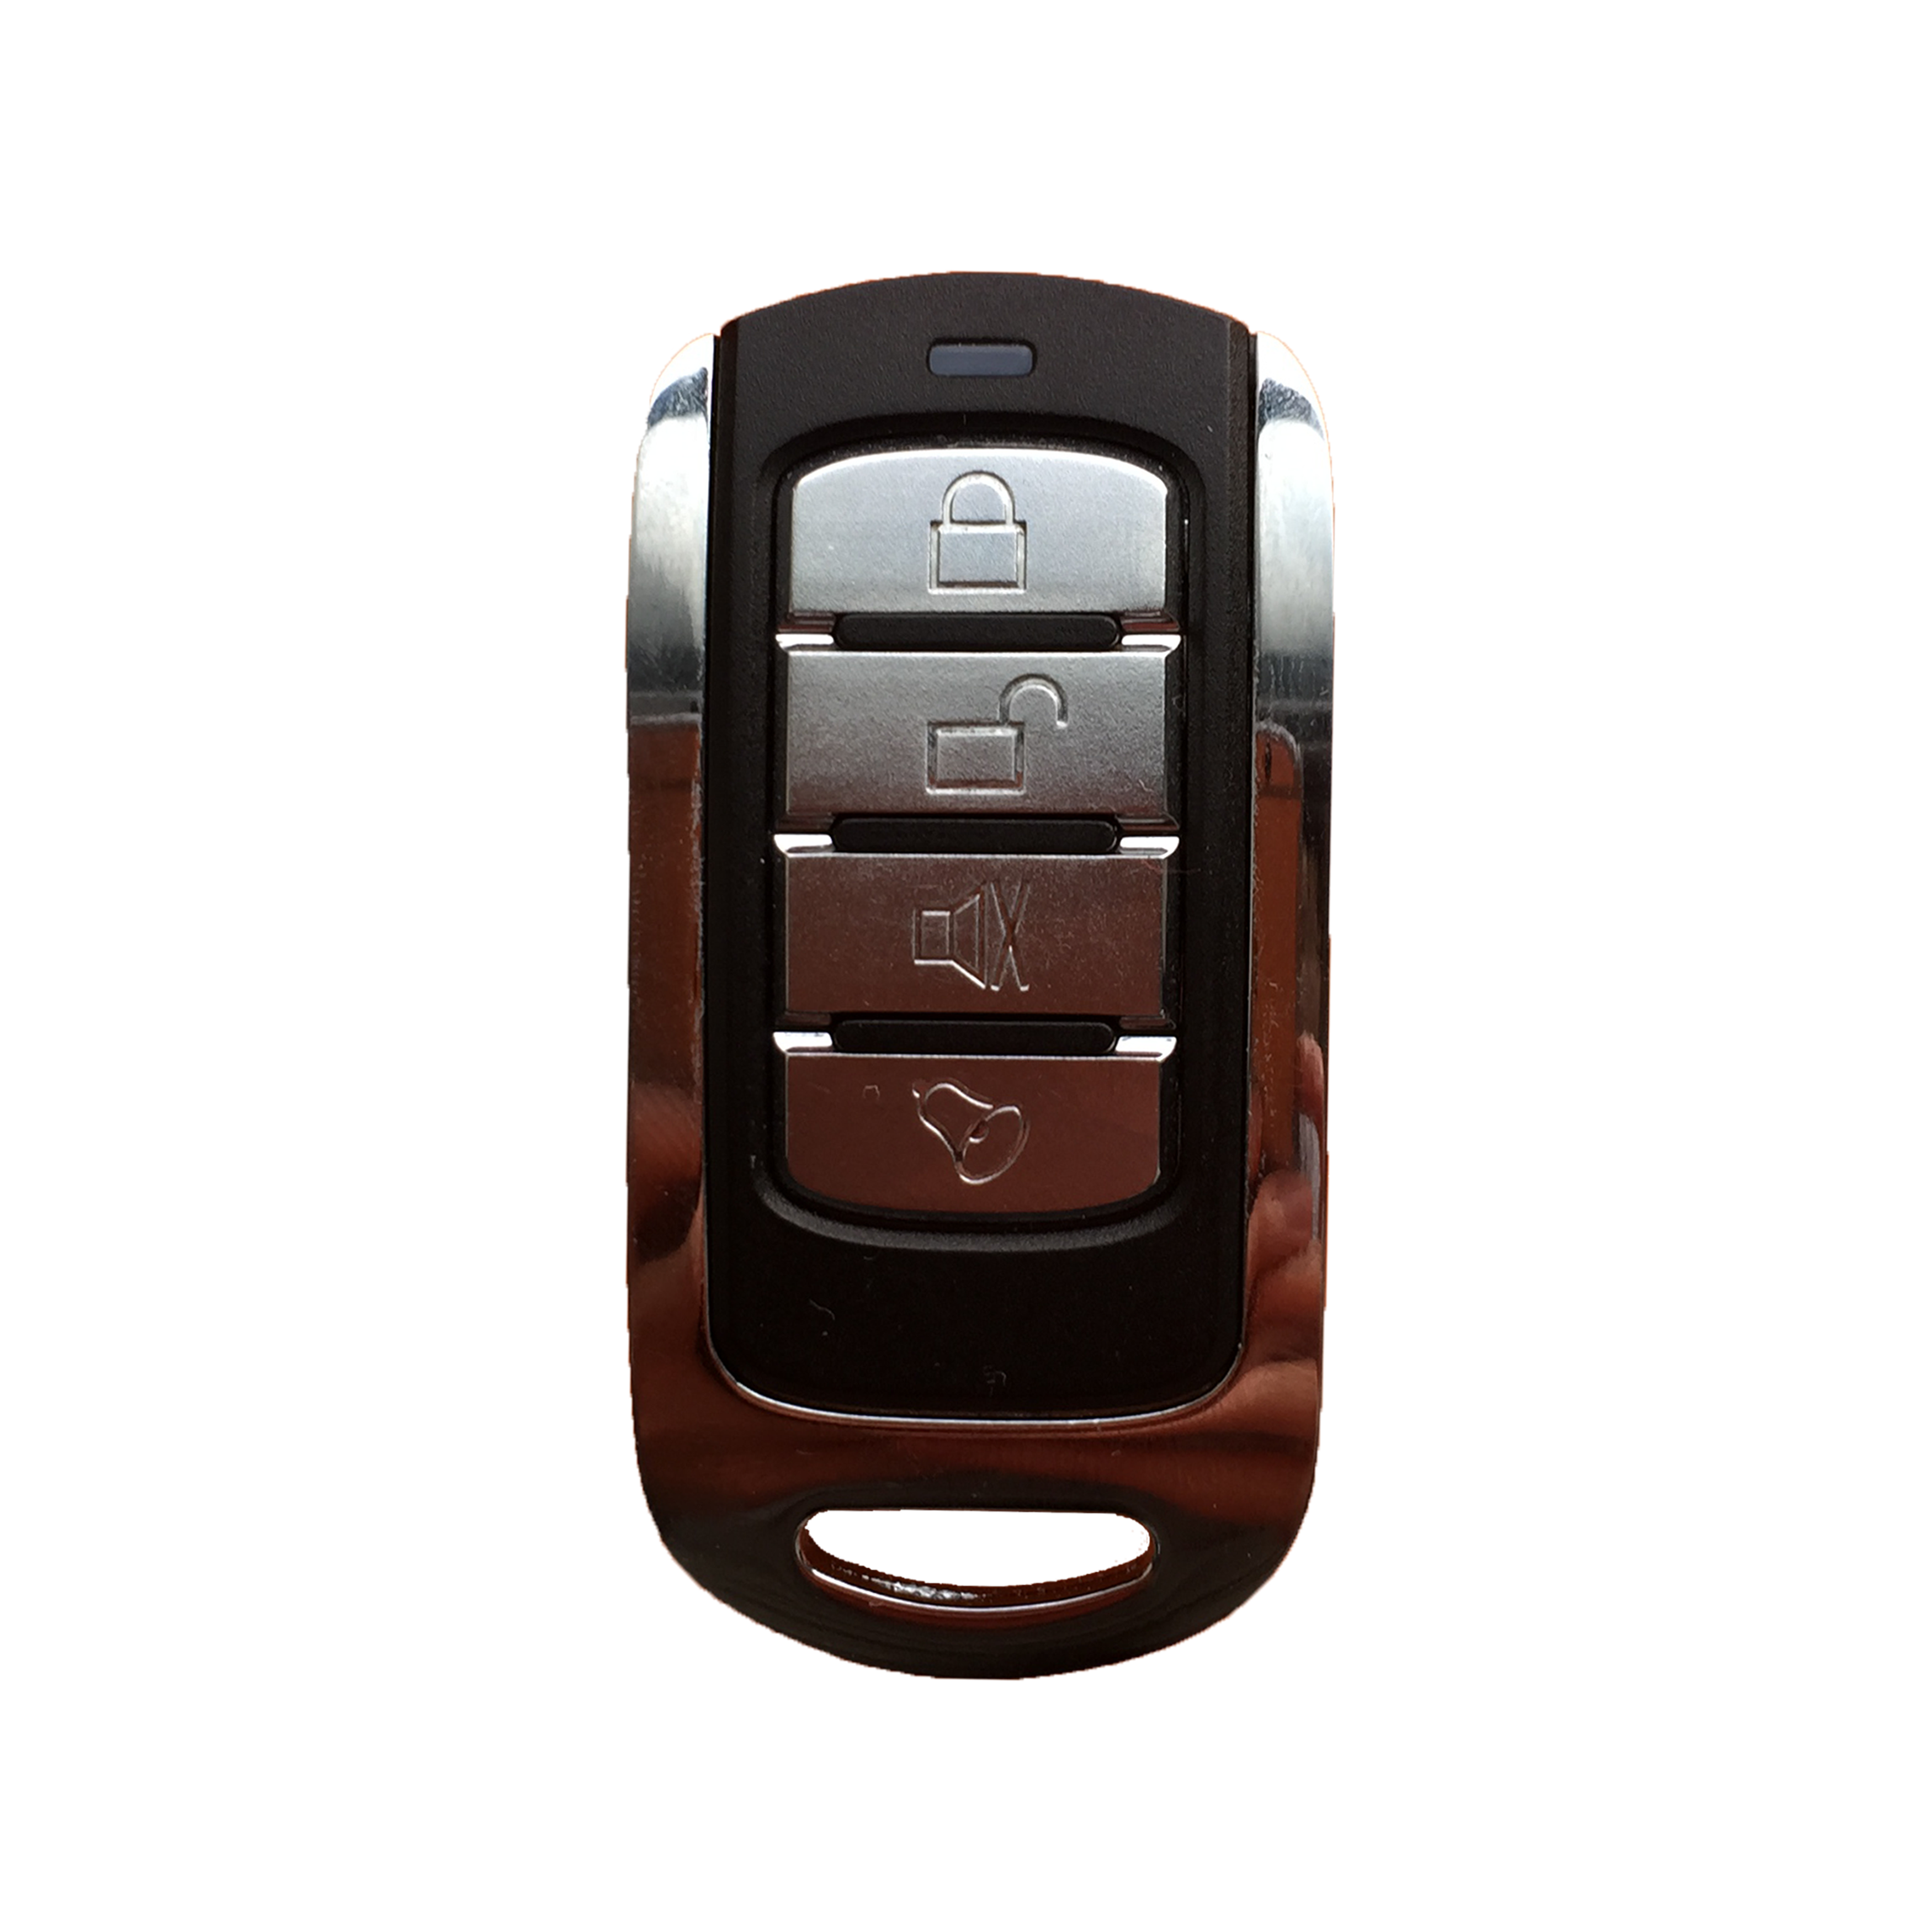 DAHUA ARA21-W Four-Key Remote Control